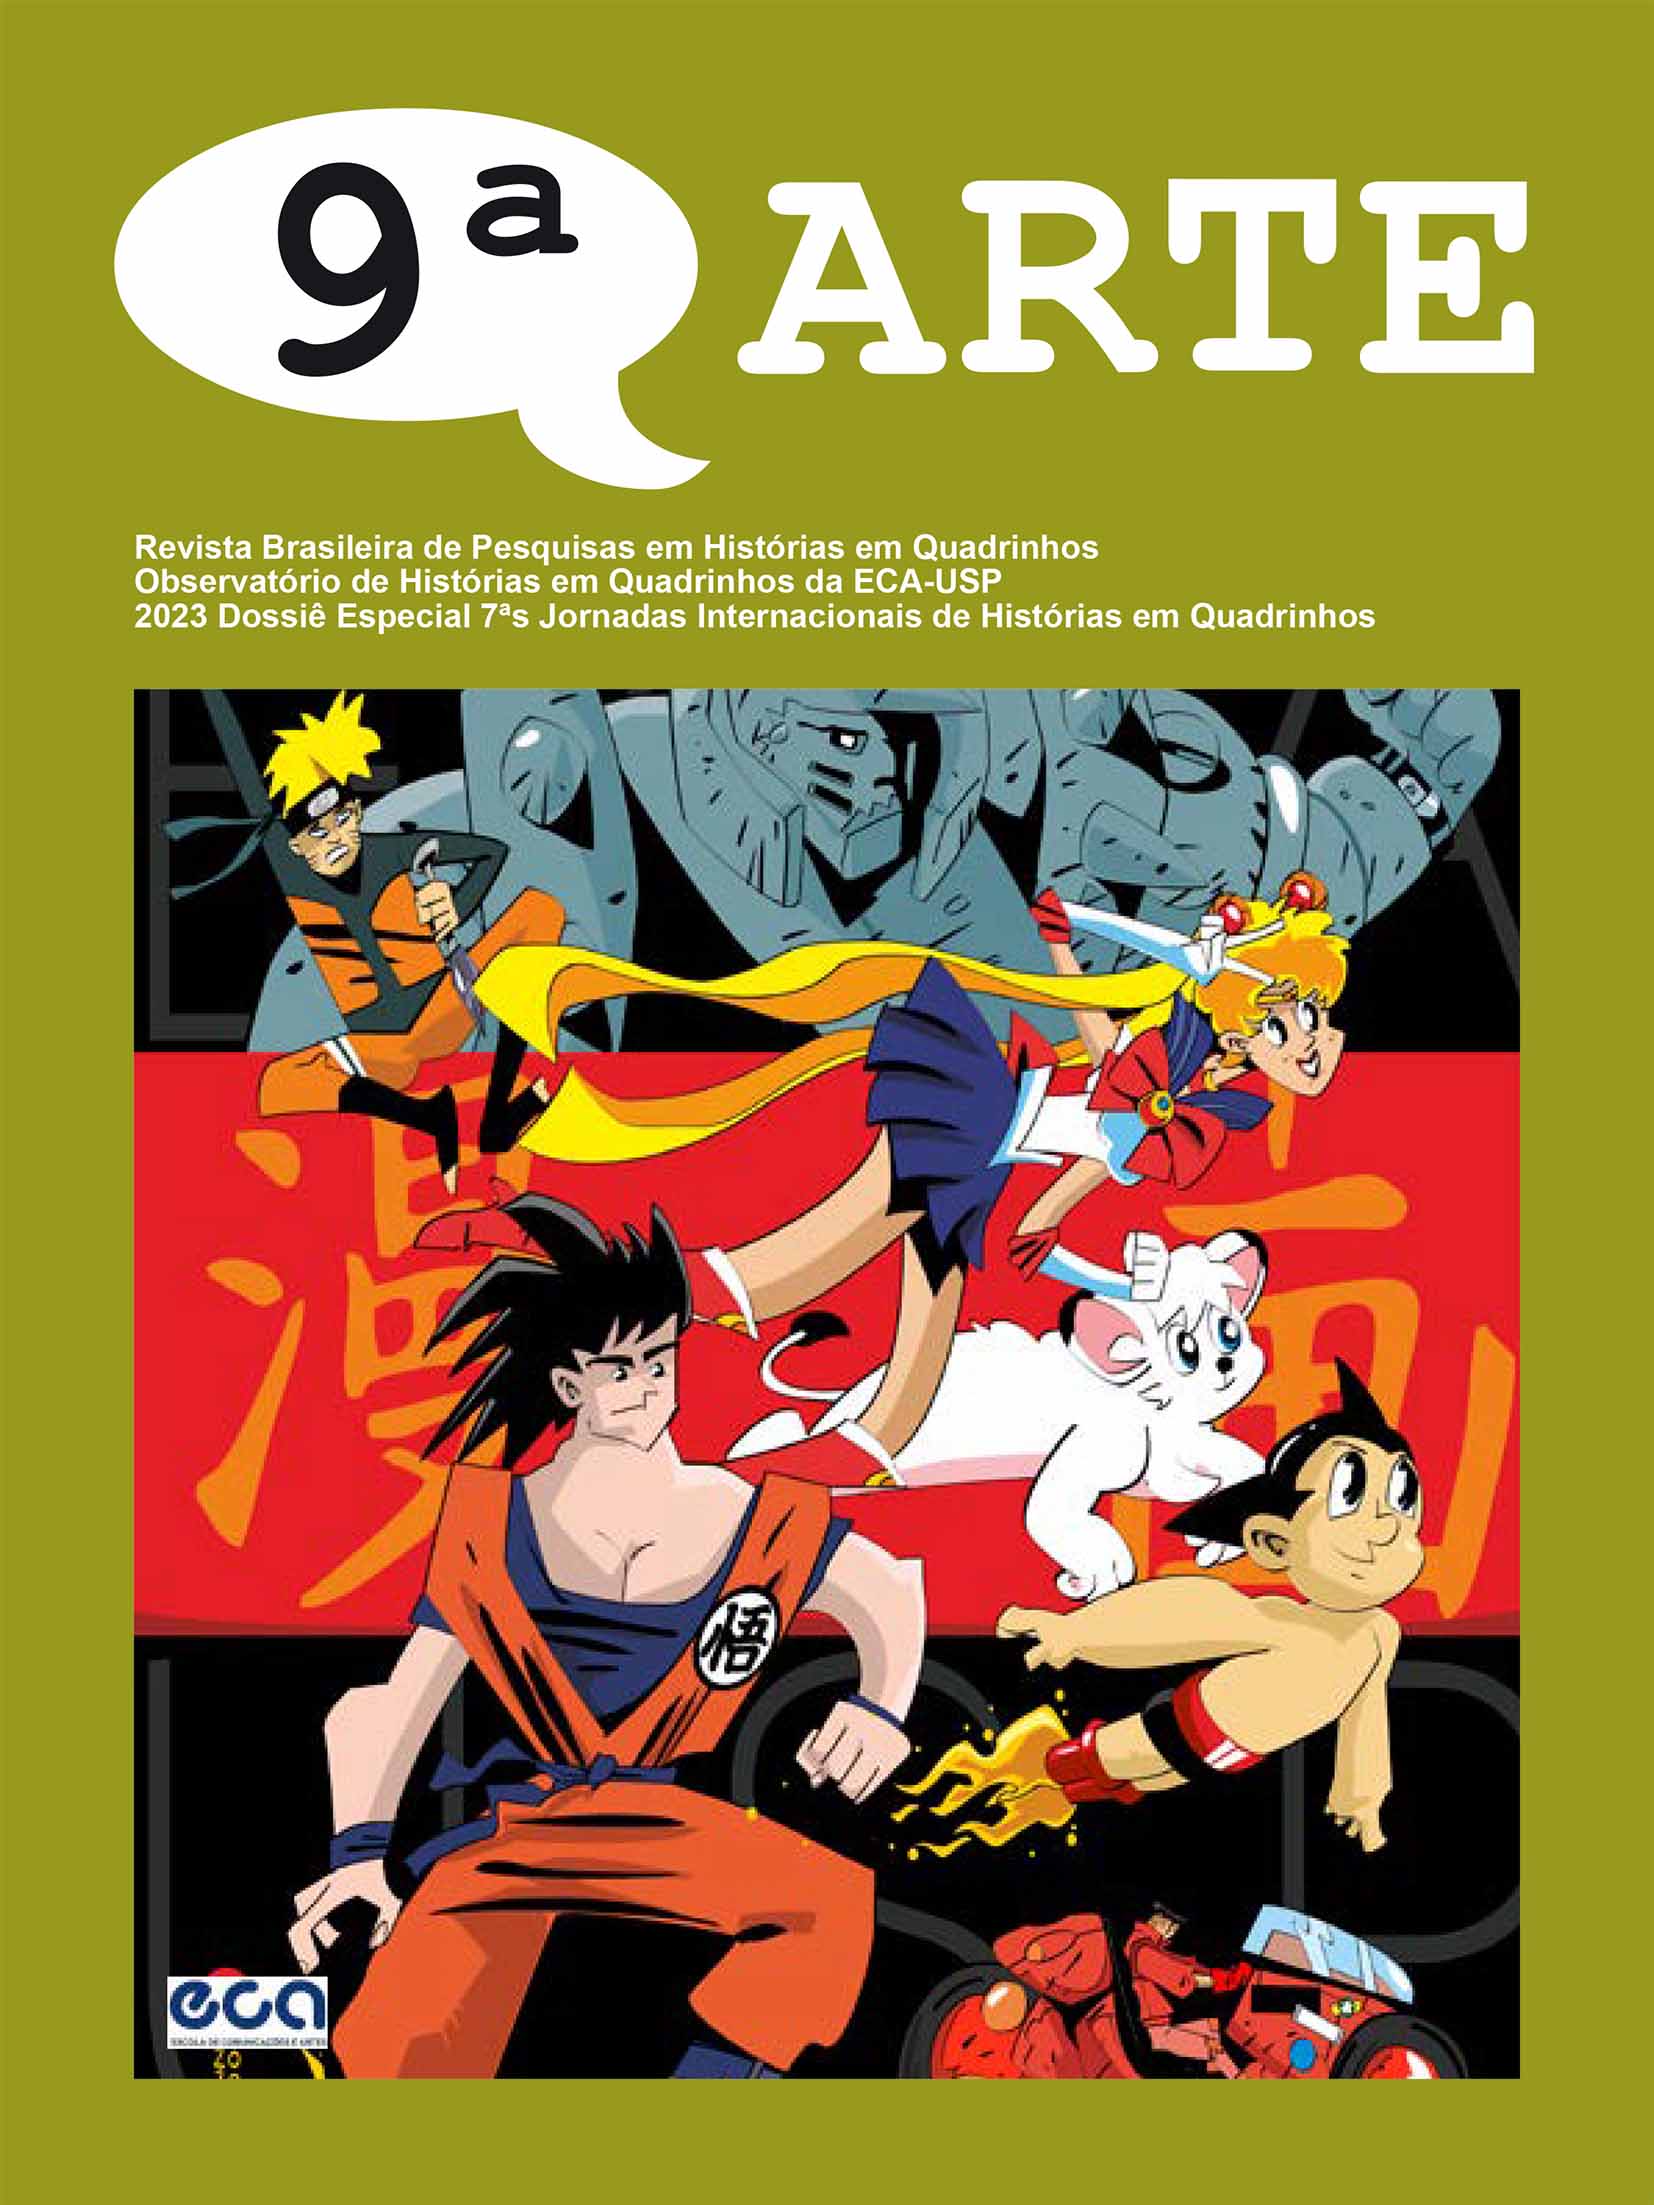 					Ver 2023: Dossiê das 7as Jornadas Internacionais de Histórias em Quadrinhos
				